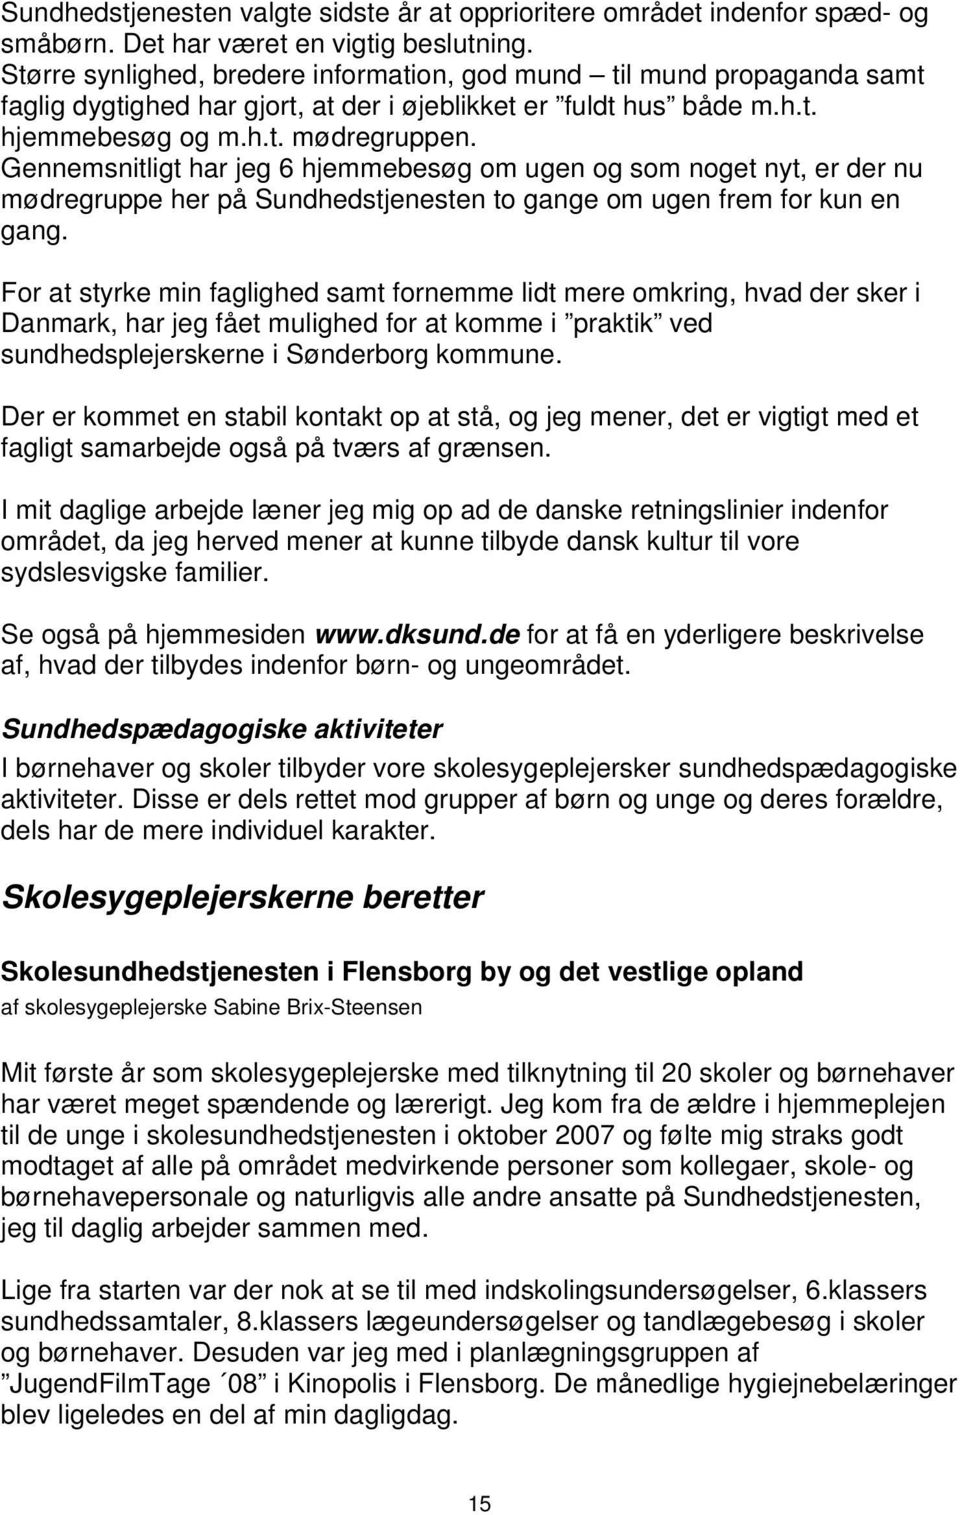 Sundhedstjeneste for Sydslesvig - PDF Free Download